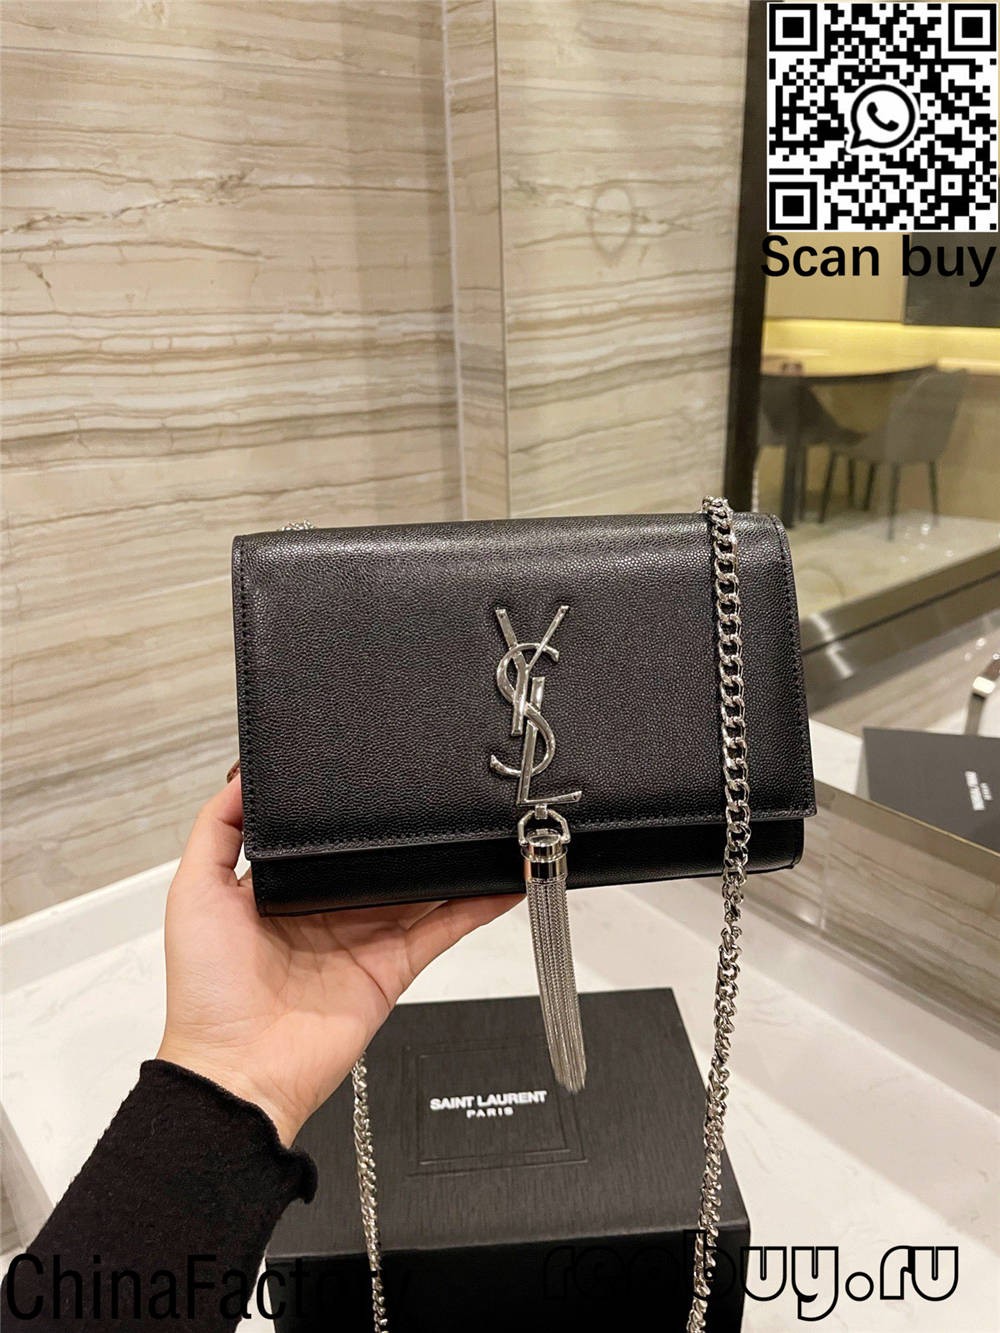 กระเป๋าจำลองที่ดีที่สุด 12 อันดับแรกของ YSL ที่ควรซื้อ (อัปเดต 2022) - ร้านค้าออนไลน์กระเป๋าปลอม Louis Vuitton คุณภาพดีที่สุด, กระเป๋าออกแบบจำลอง ru